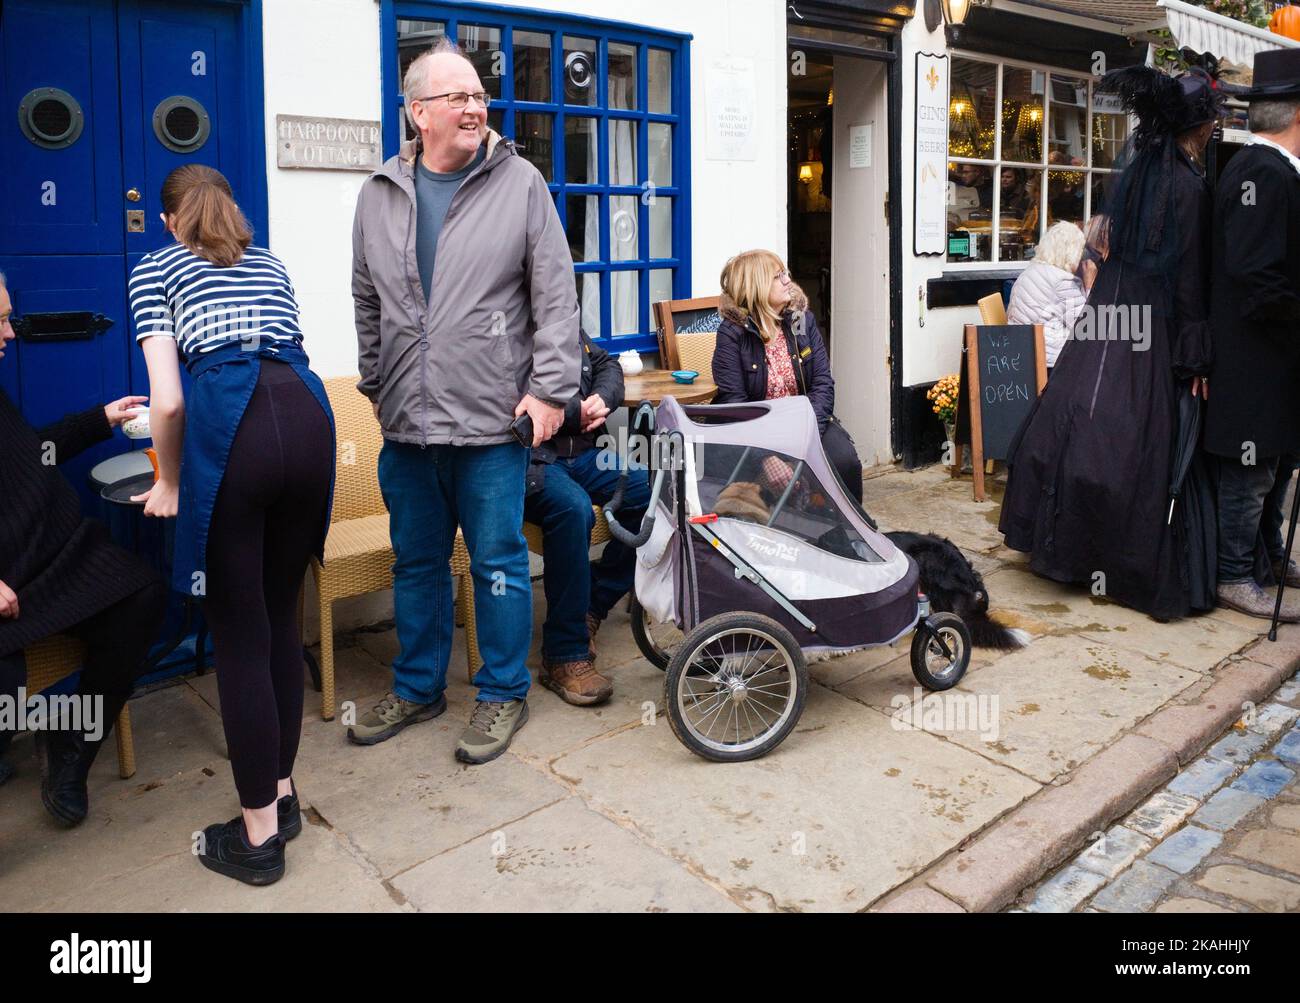 Cafe in Church Street, Whitby während des geschäftigen Gothundwochenendes mit Hund im Kinderwagen Stockfoto